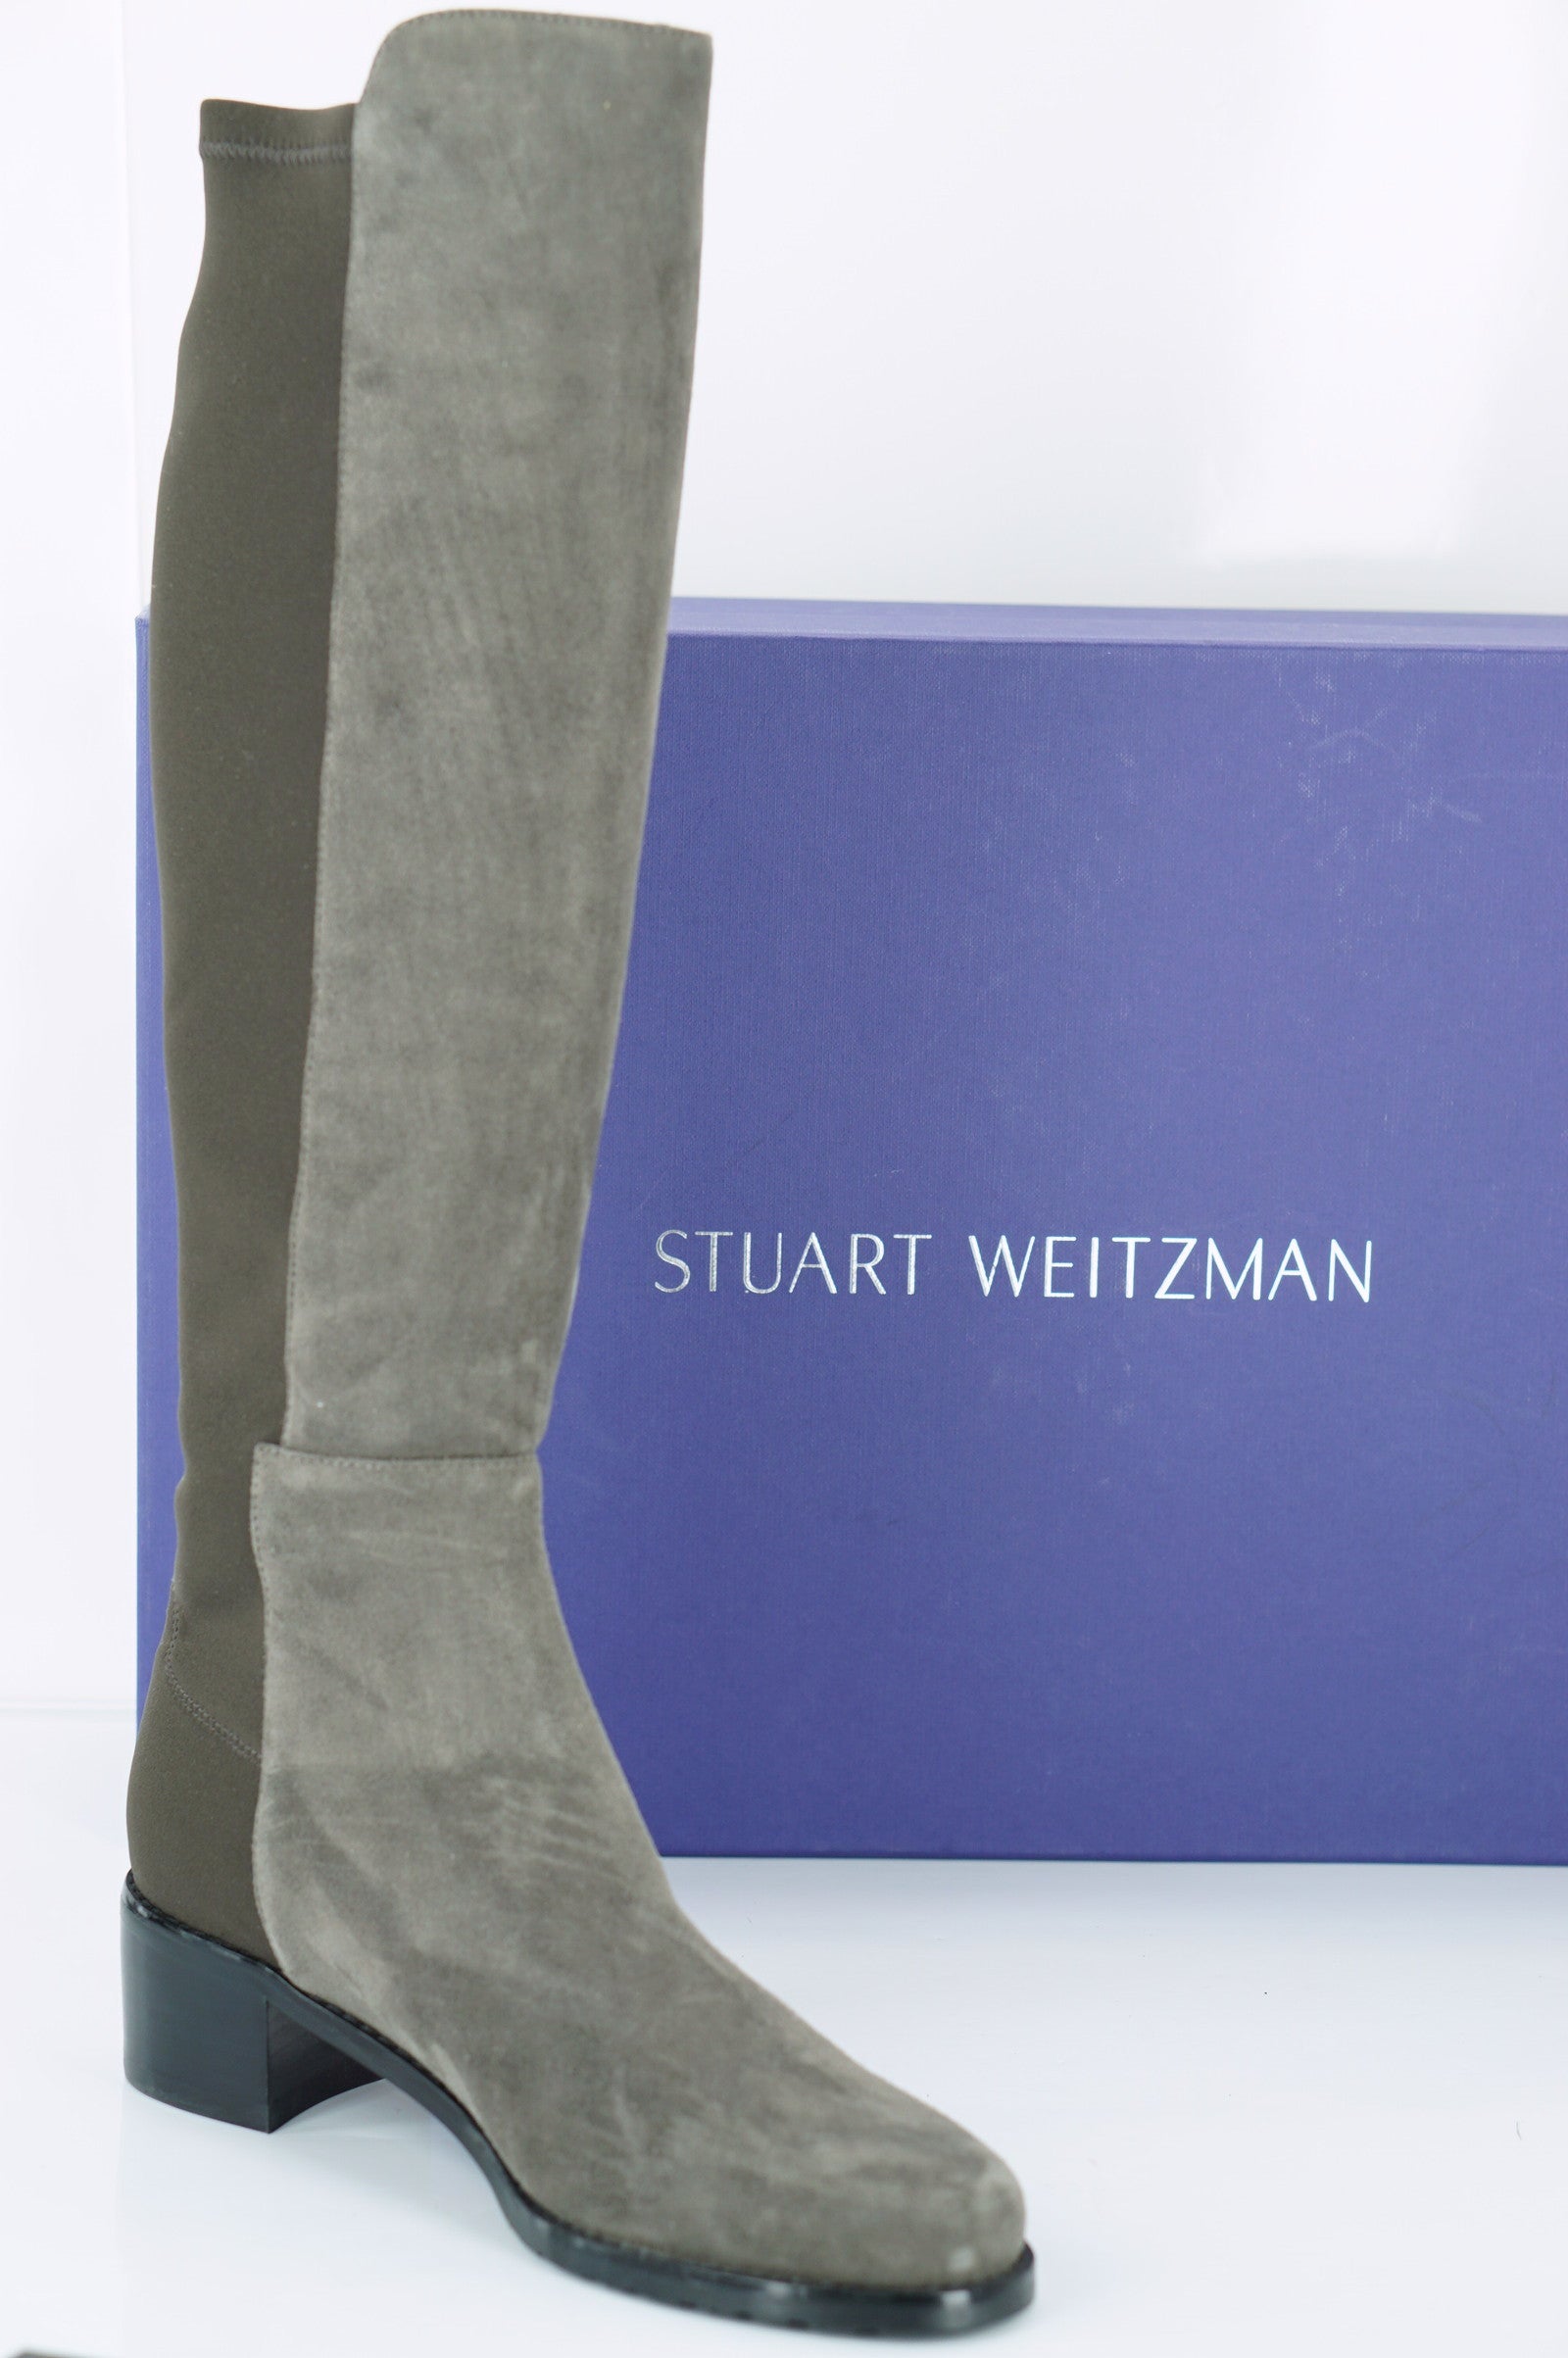 Stuart Weitzman Grey Suede Mezzaluna Stretch Riding Boots Size 5 NIB 5050 $665